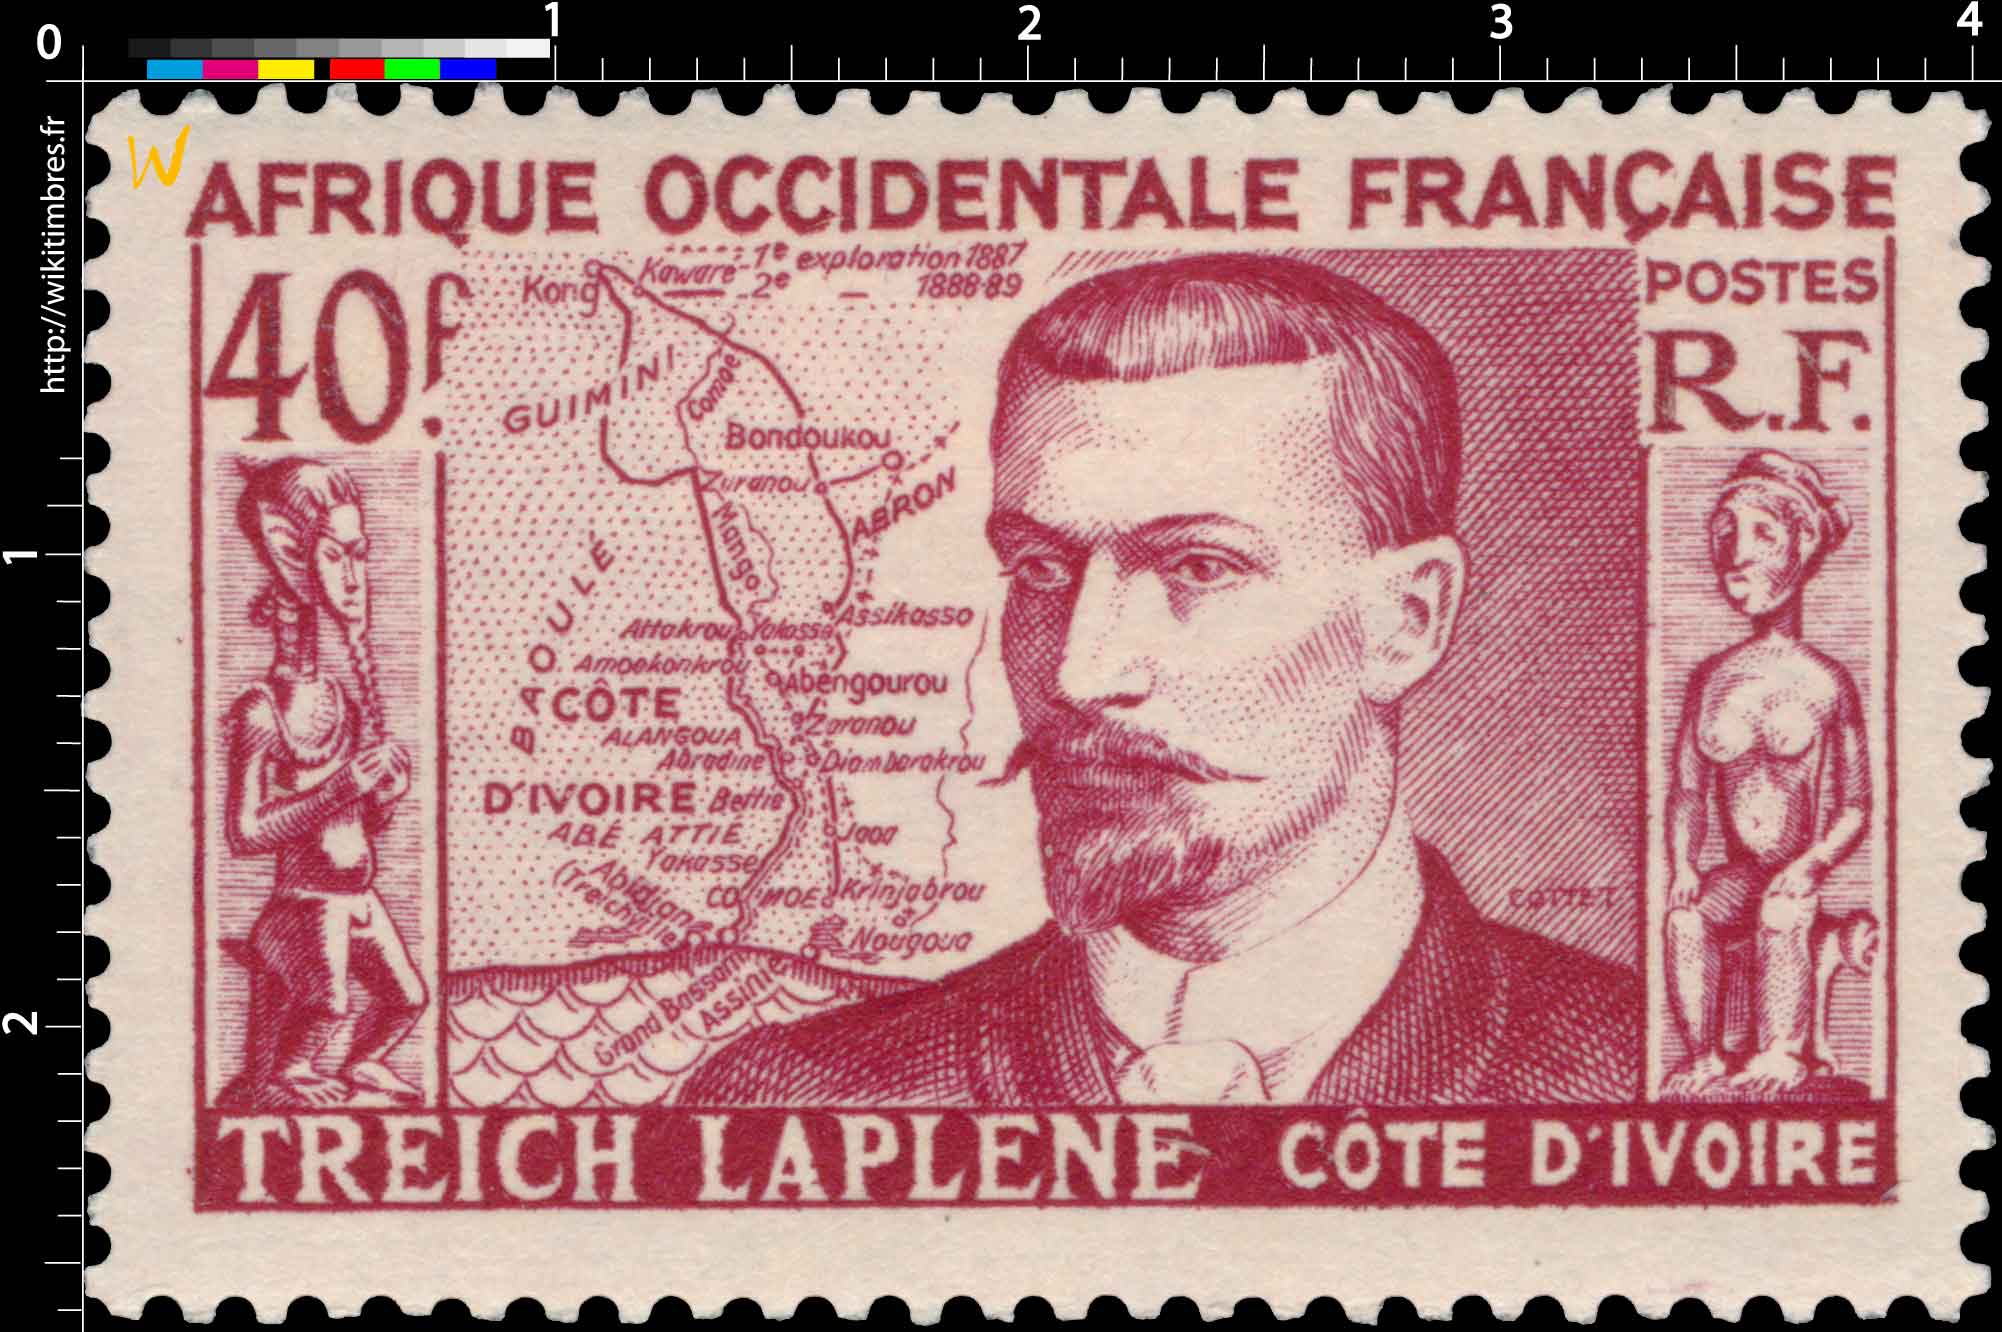 Afrique Occidentale Française - Marcel Treich-Laplène COTE D'IVOIRE